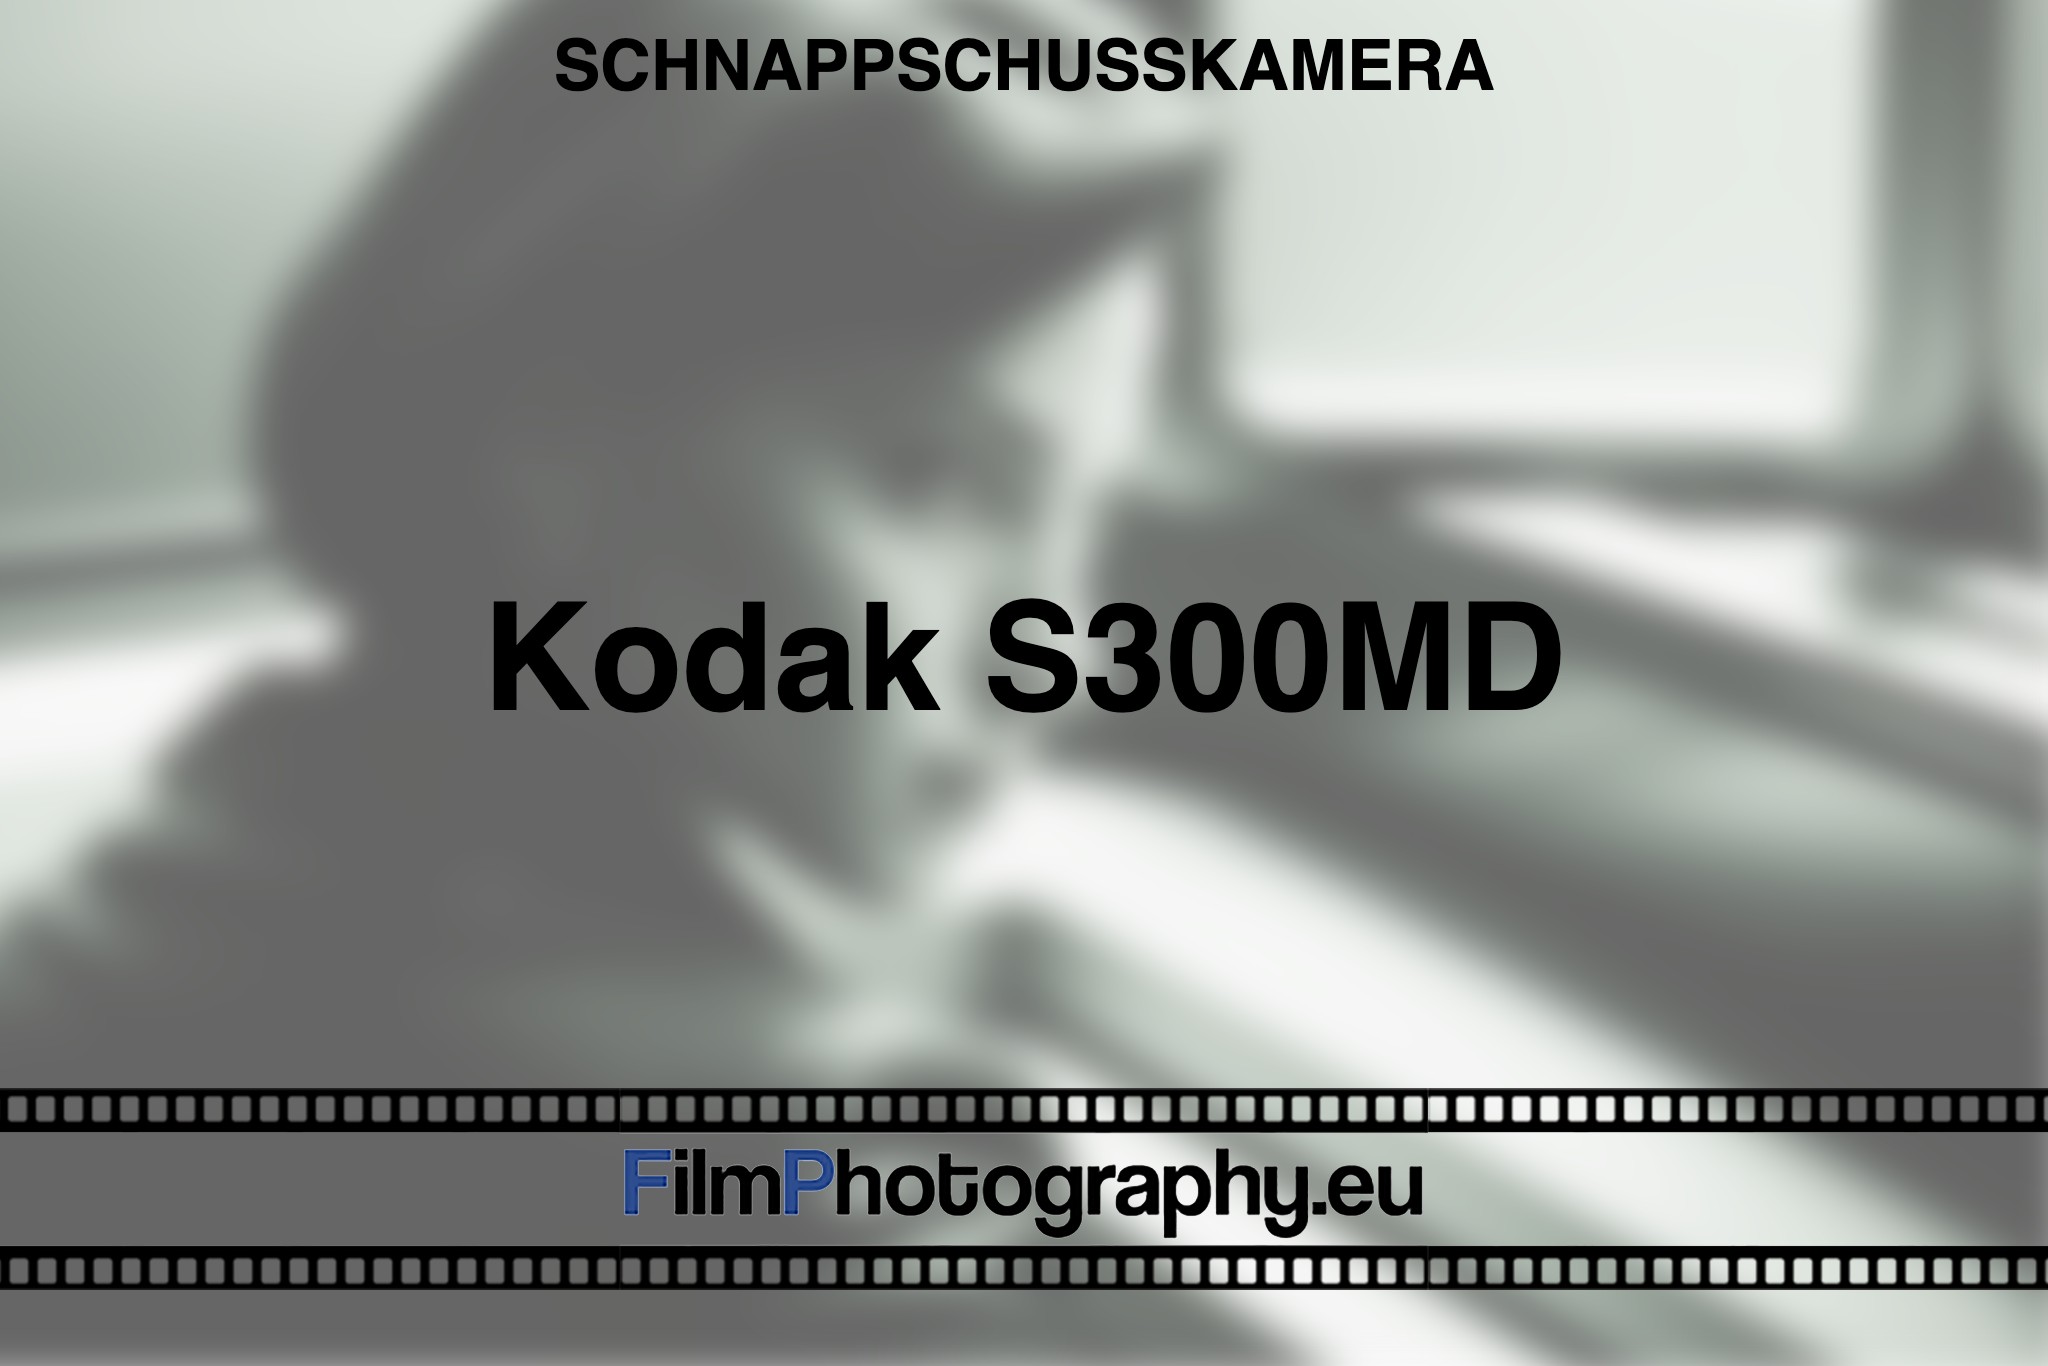 kodak-s300md-schnappschusskamera-bnv